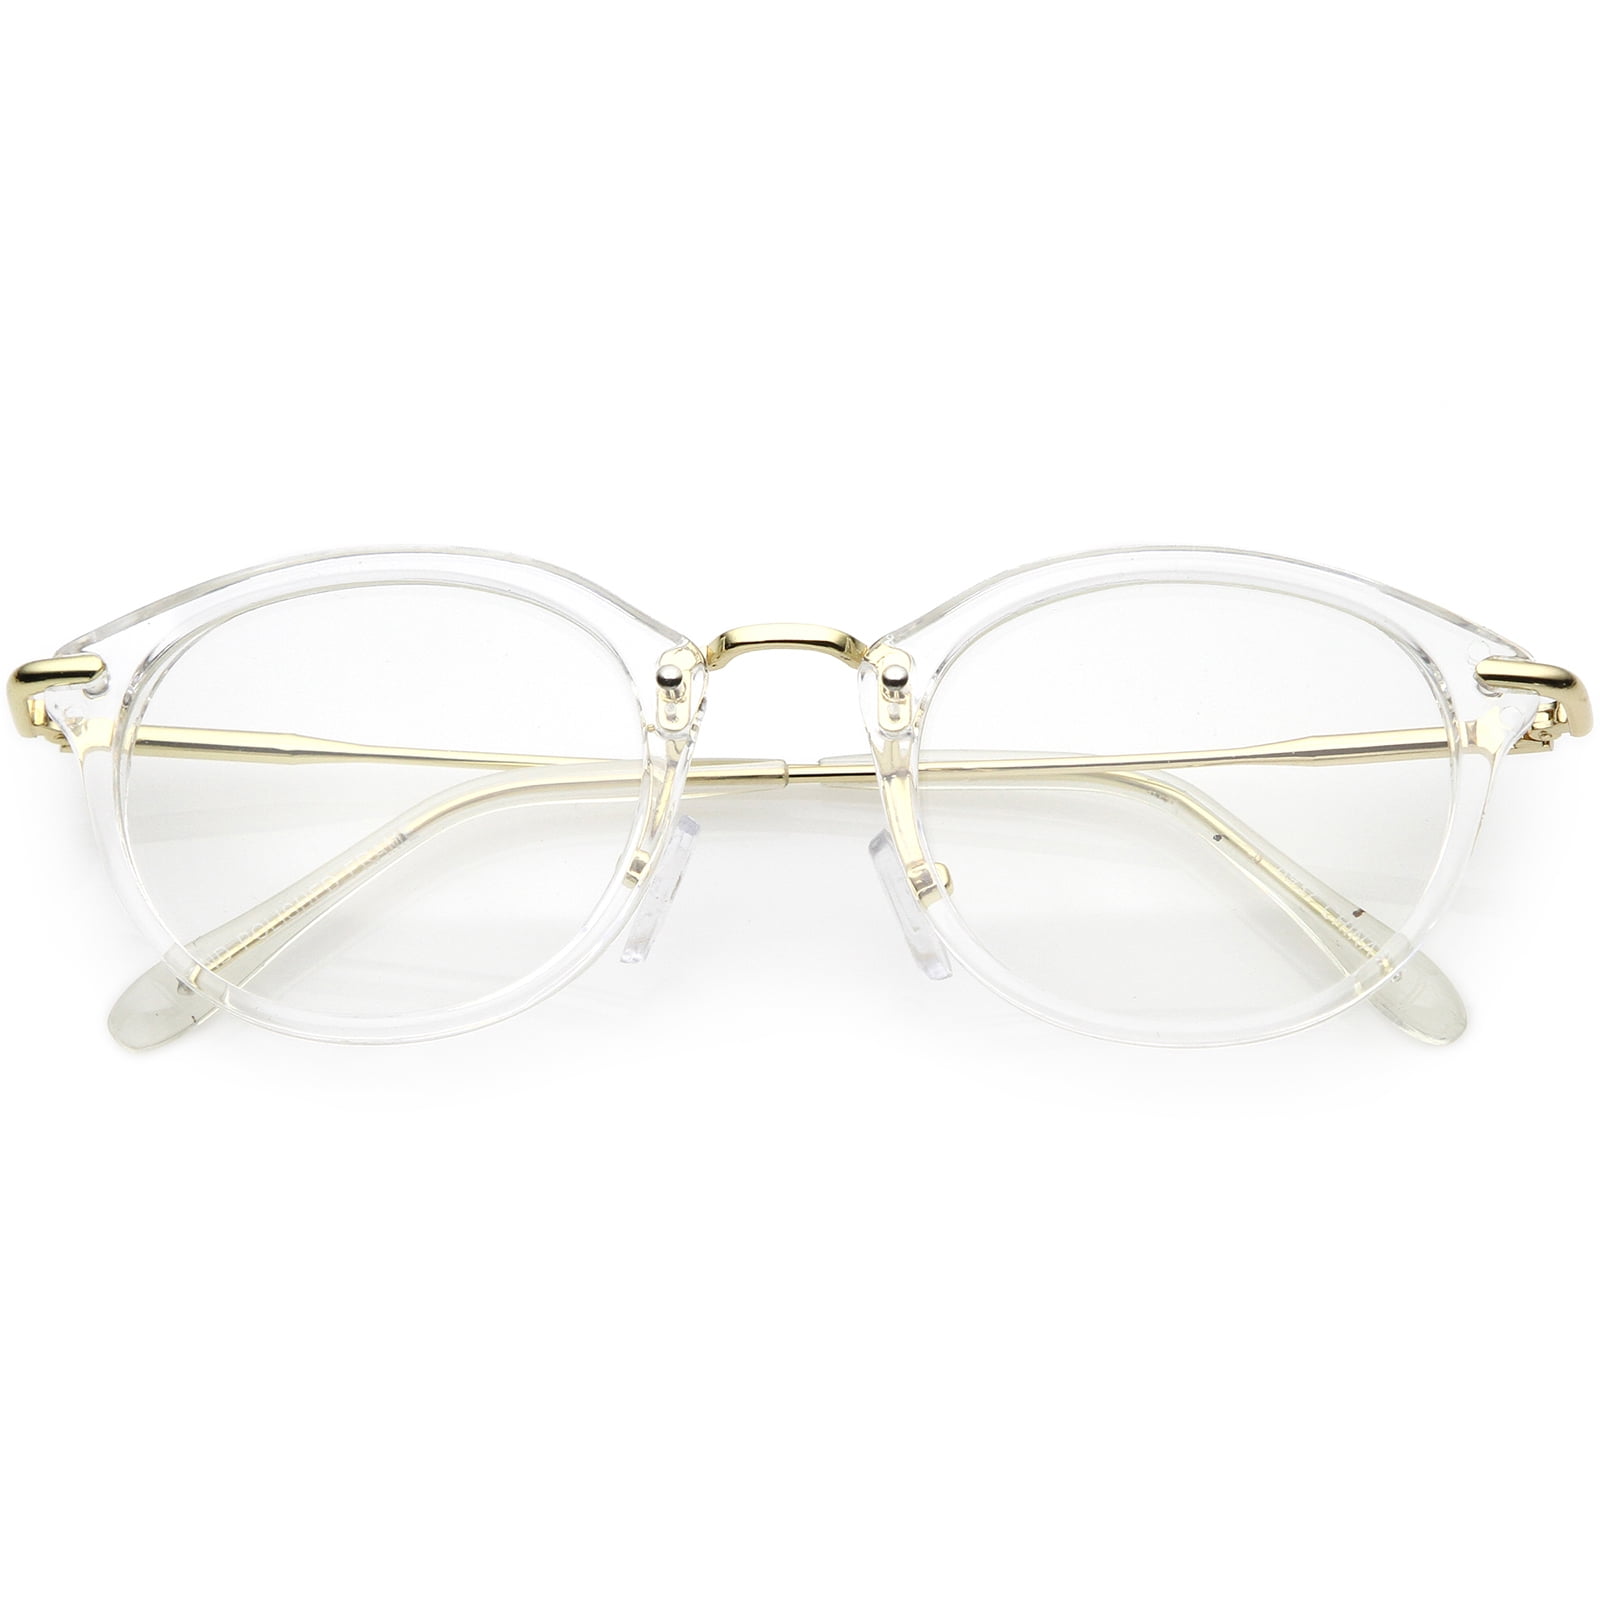 thin round eyeglasses